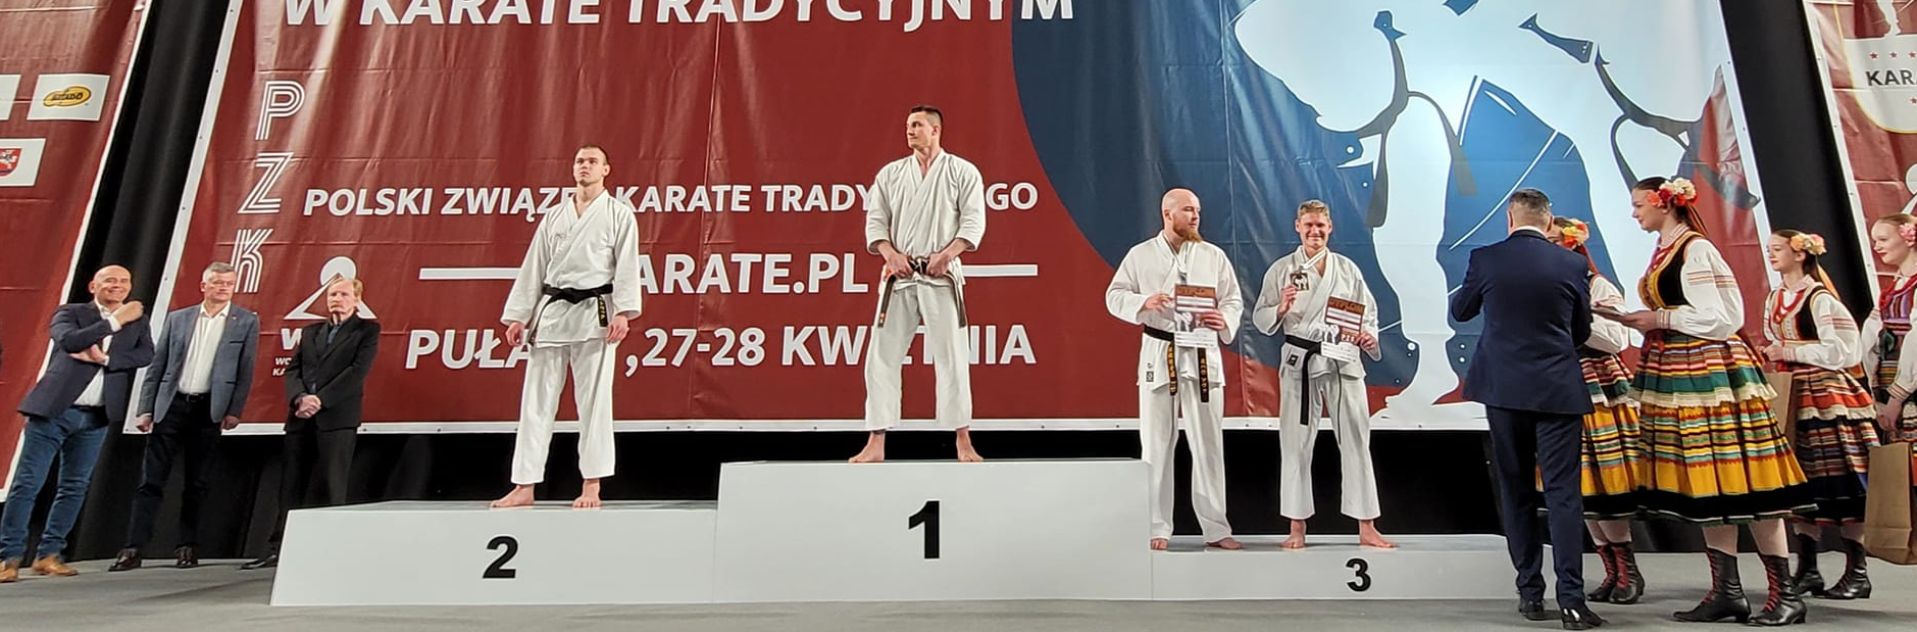 Karatecy na podium zawodów 